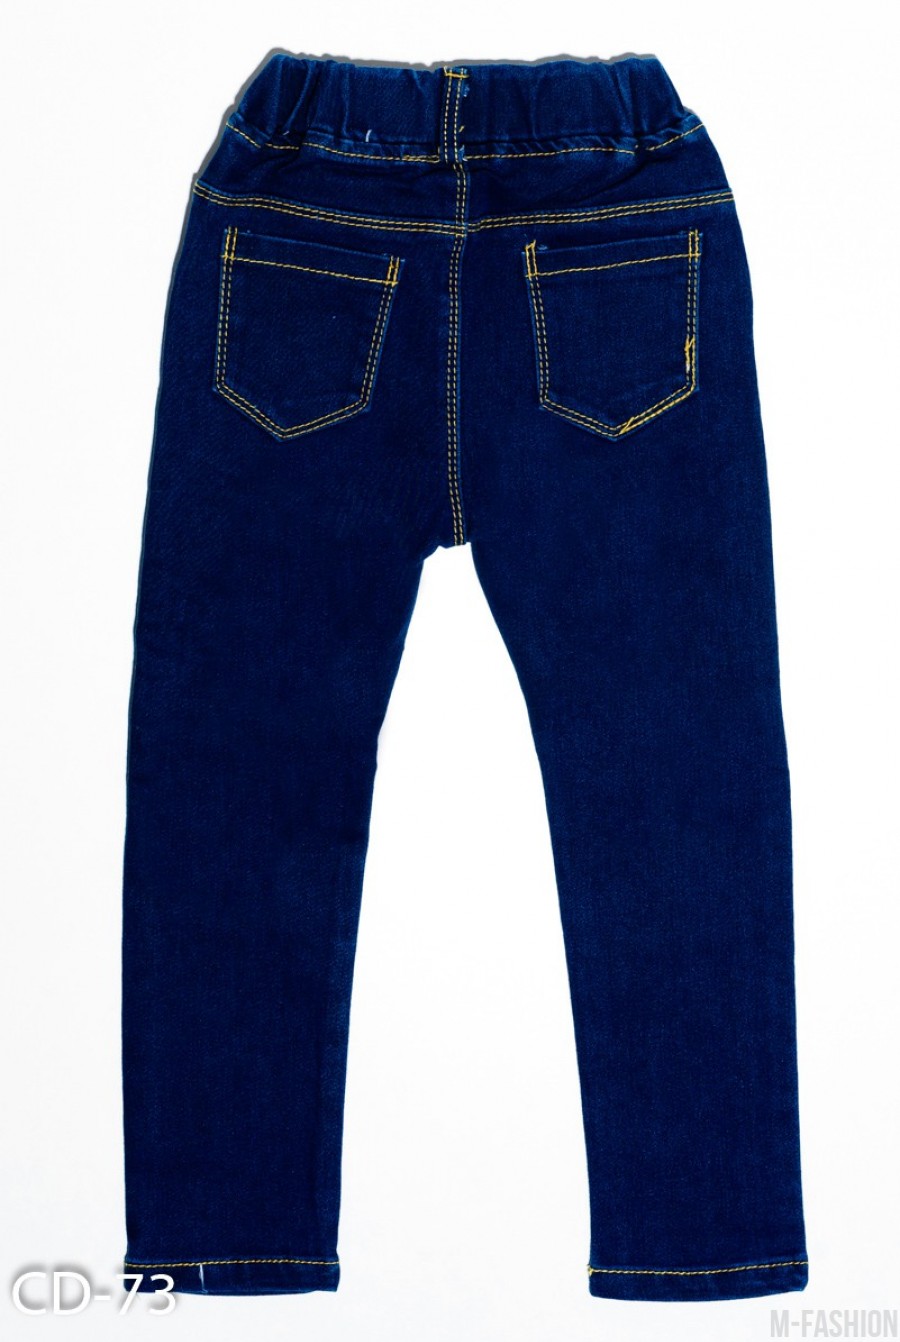 Темно-синие зауженные джинсы на резинке с рваной перфорацией на коленях- Фото 3